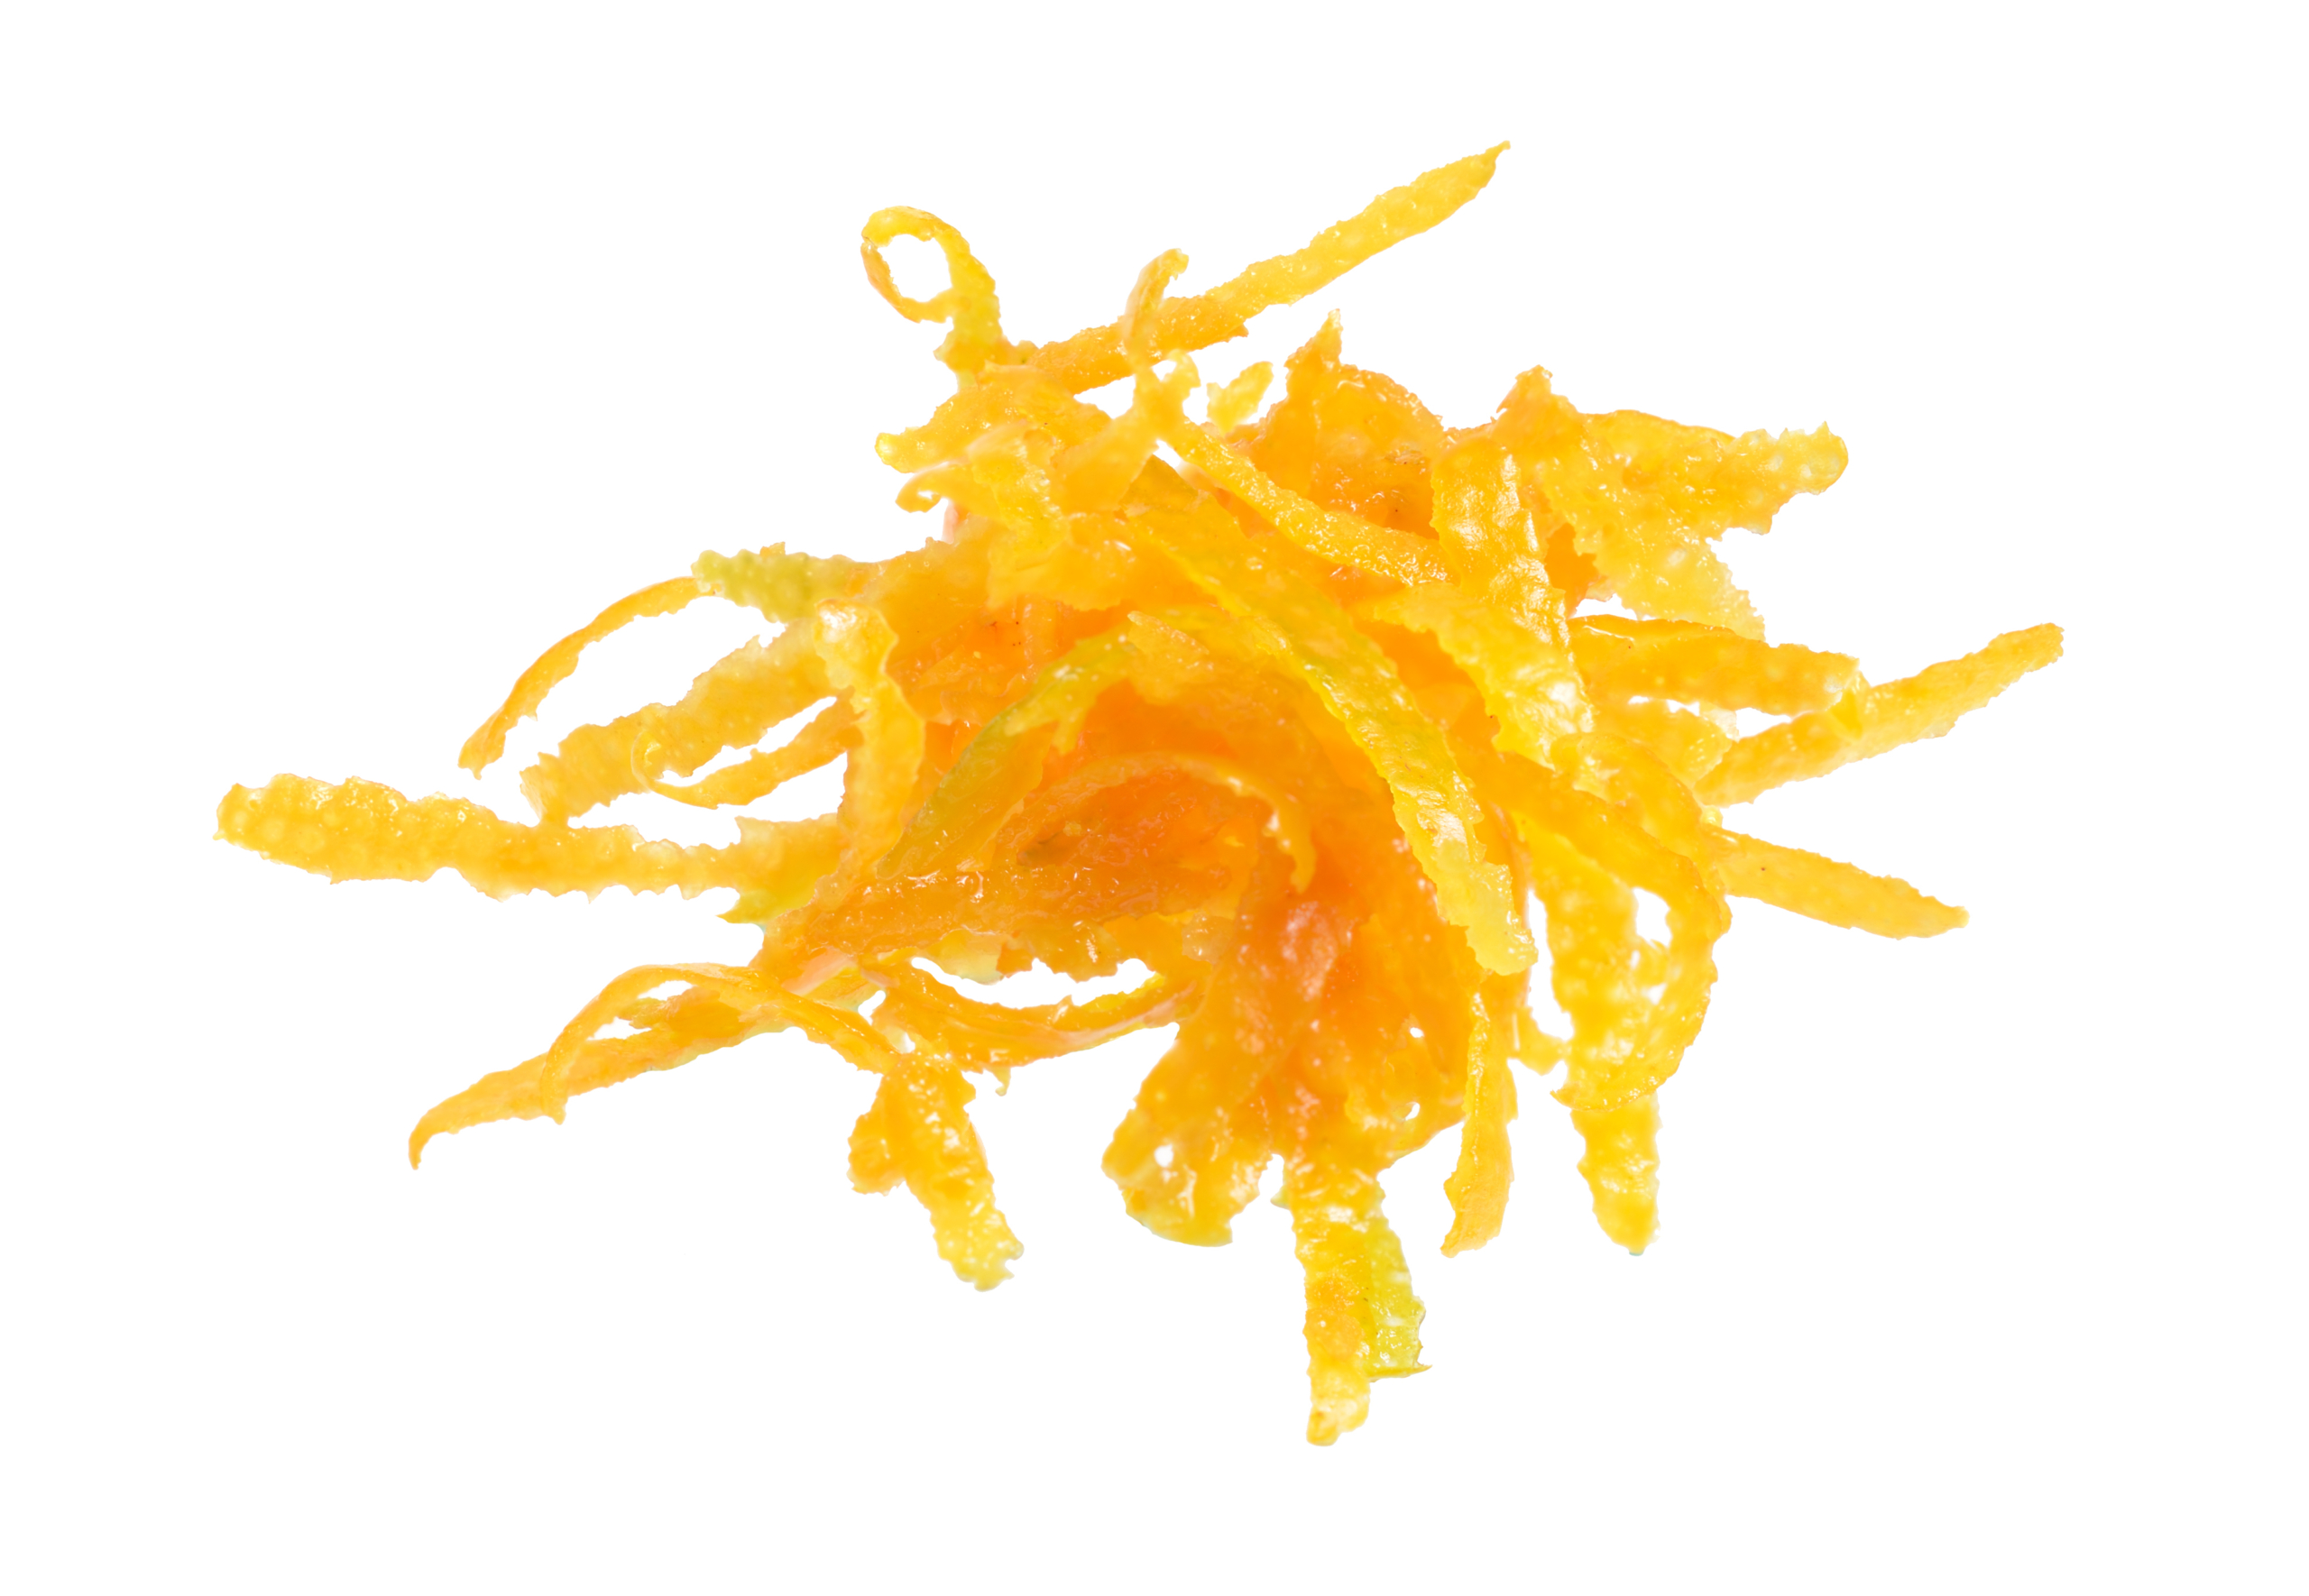 Vỏ của các loại trái cây họ cam quýt có chứa d-Limonene, là một hợp chất tự nhiên giúp phân hủy dầu. (Ảnh: Shutterstock)